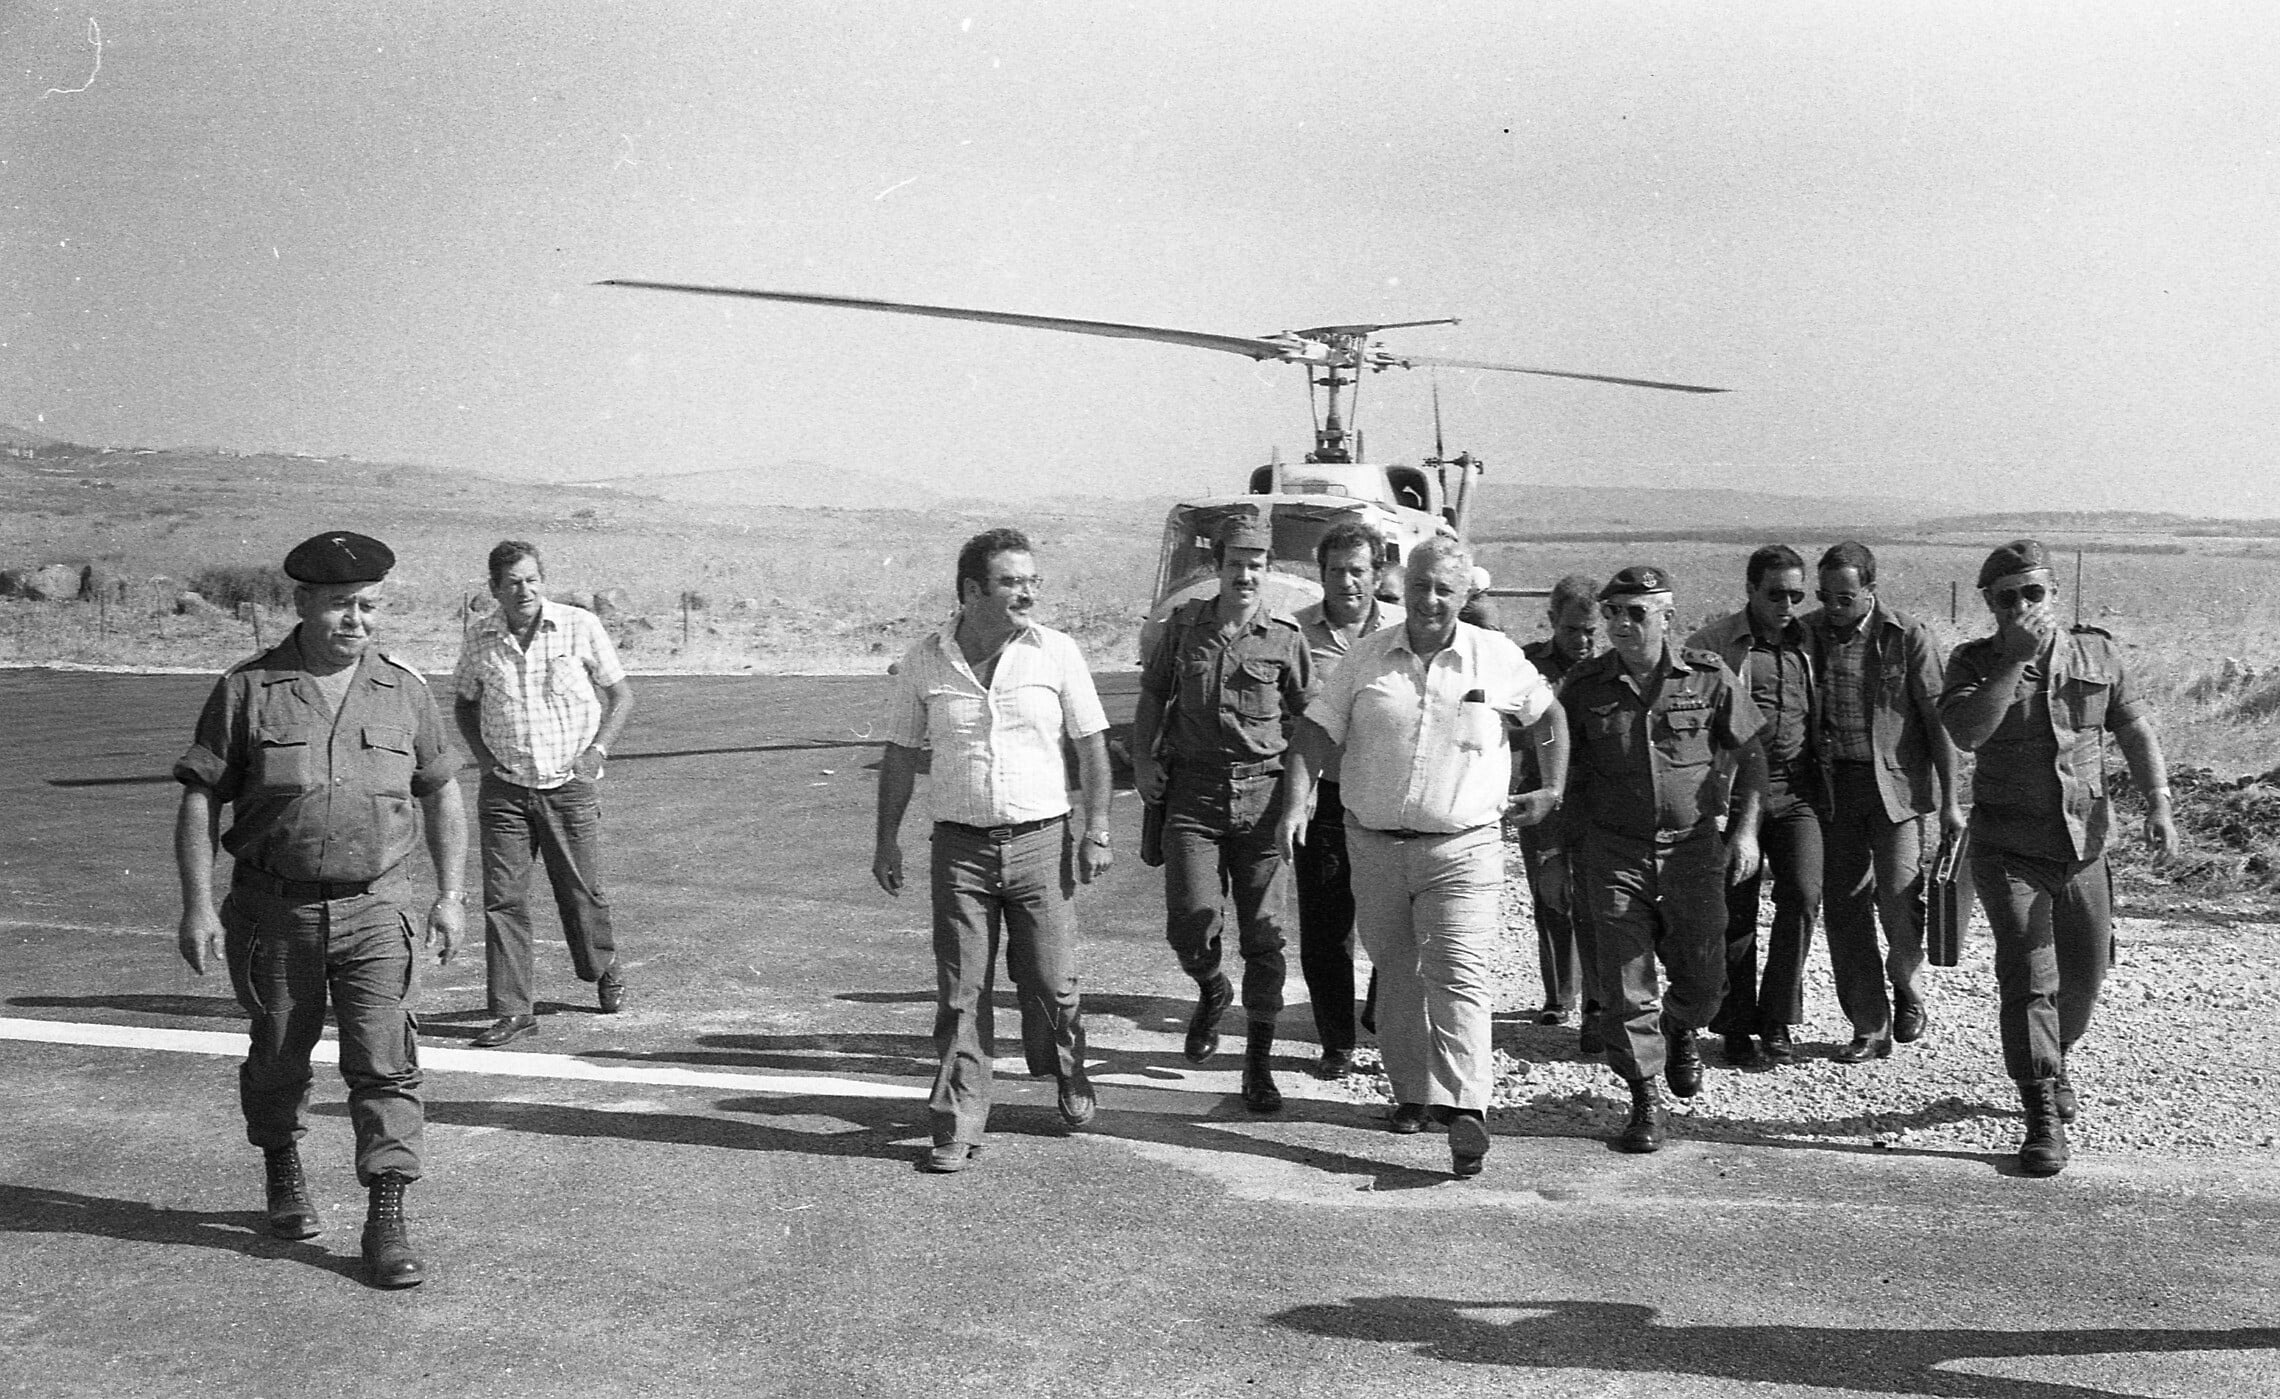 שר הביטחון אריאל שרון מגיע לביקור בקריית שמונה ב-17 באוגוסט 1981 (צילום: יוסי אלמקייס, ארכיון דן הדני, הספרייה הלאומית)